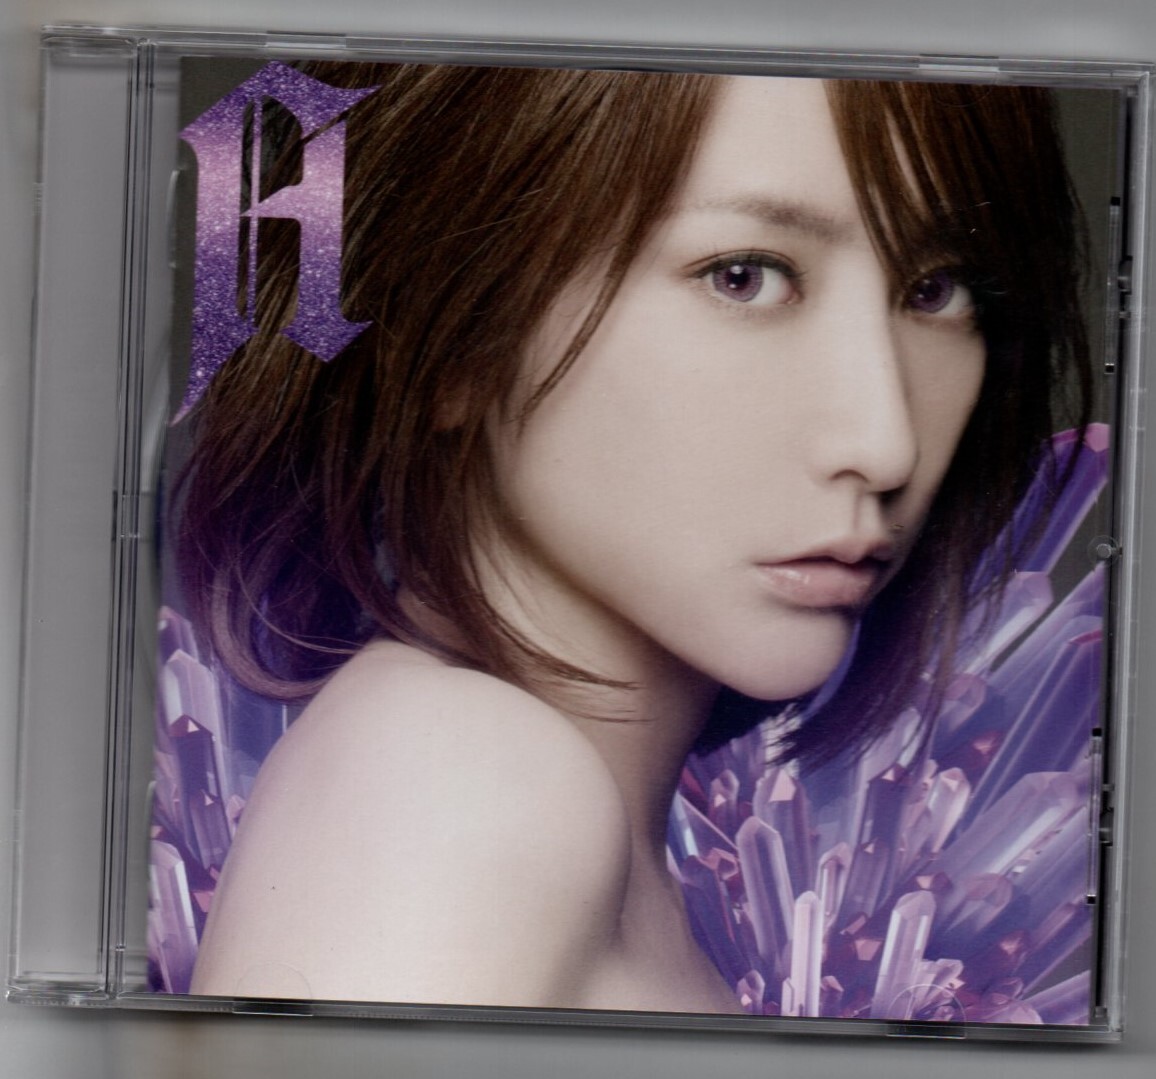 中古CD/BEST -A- 藍井エイル セル版